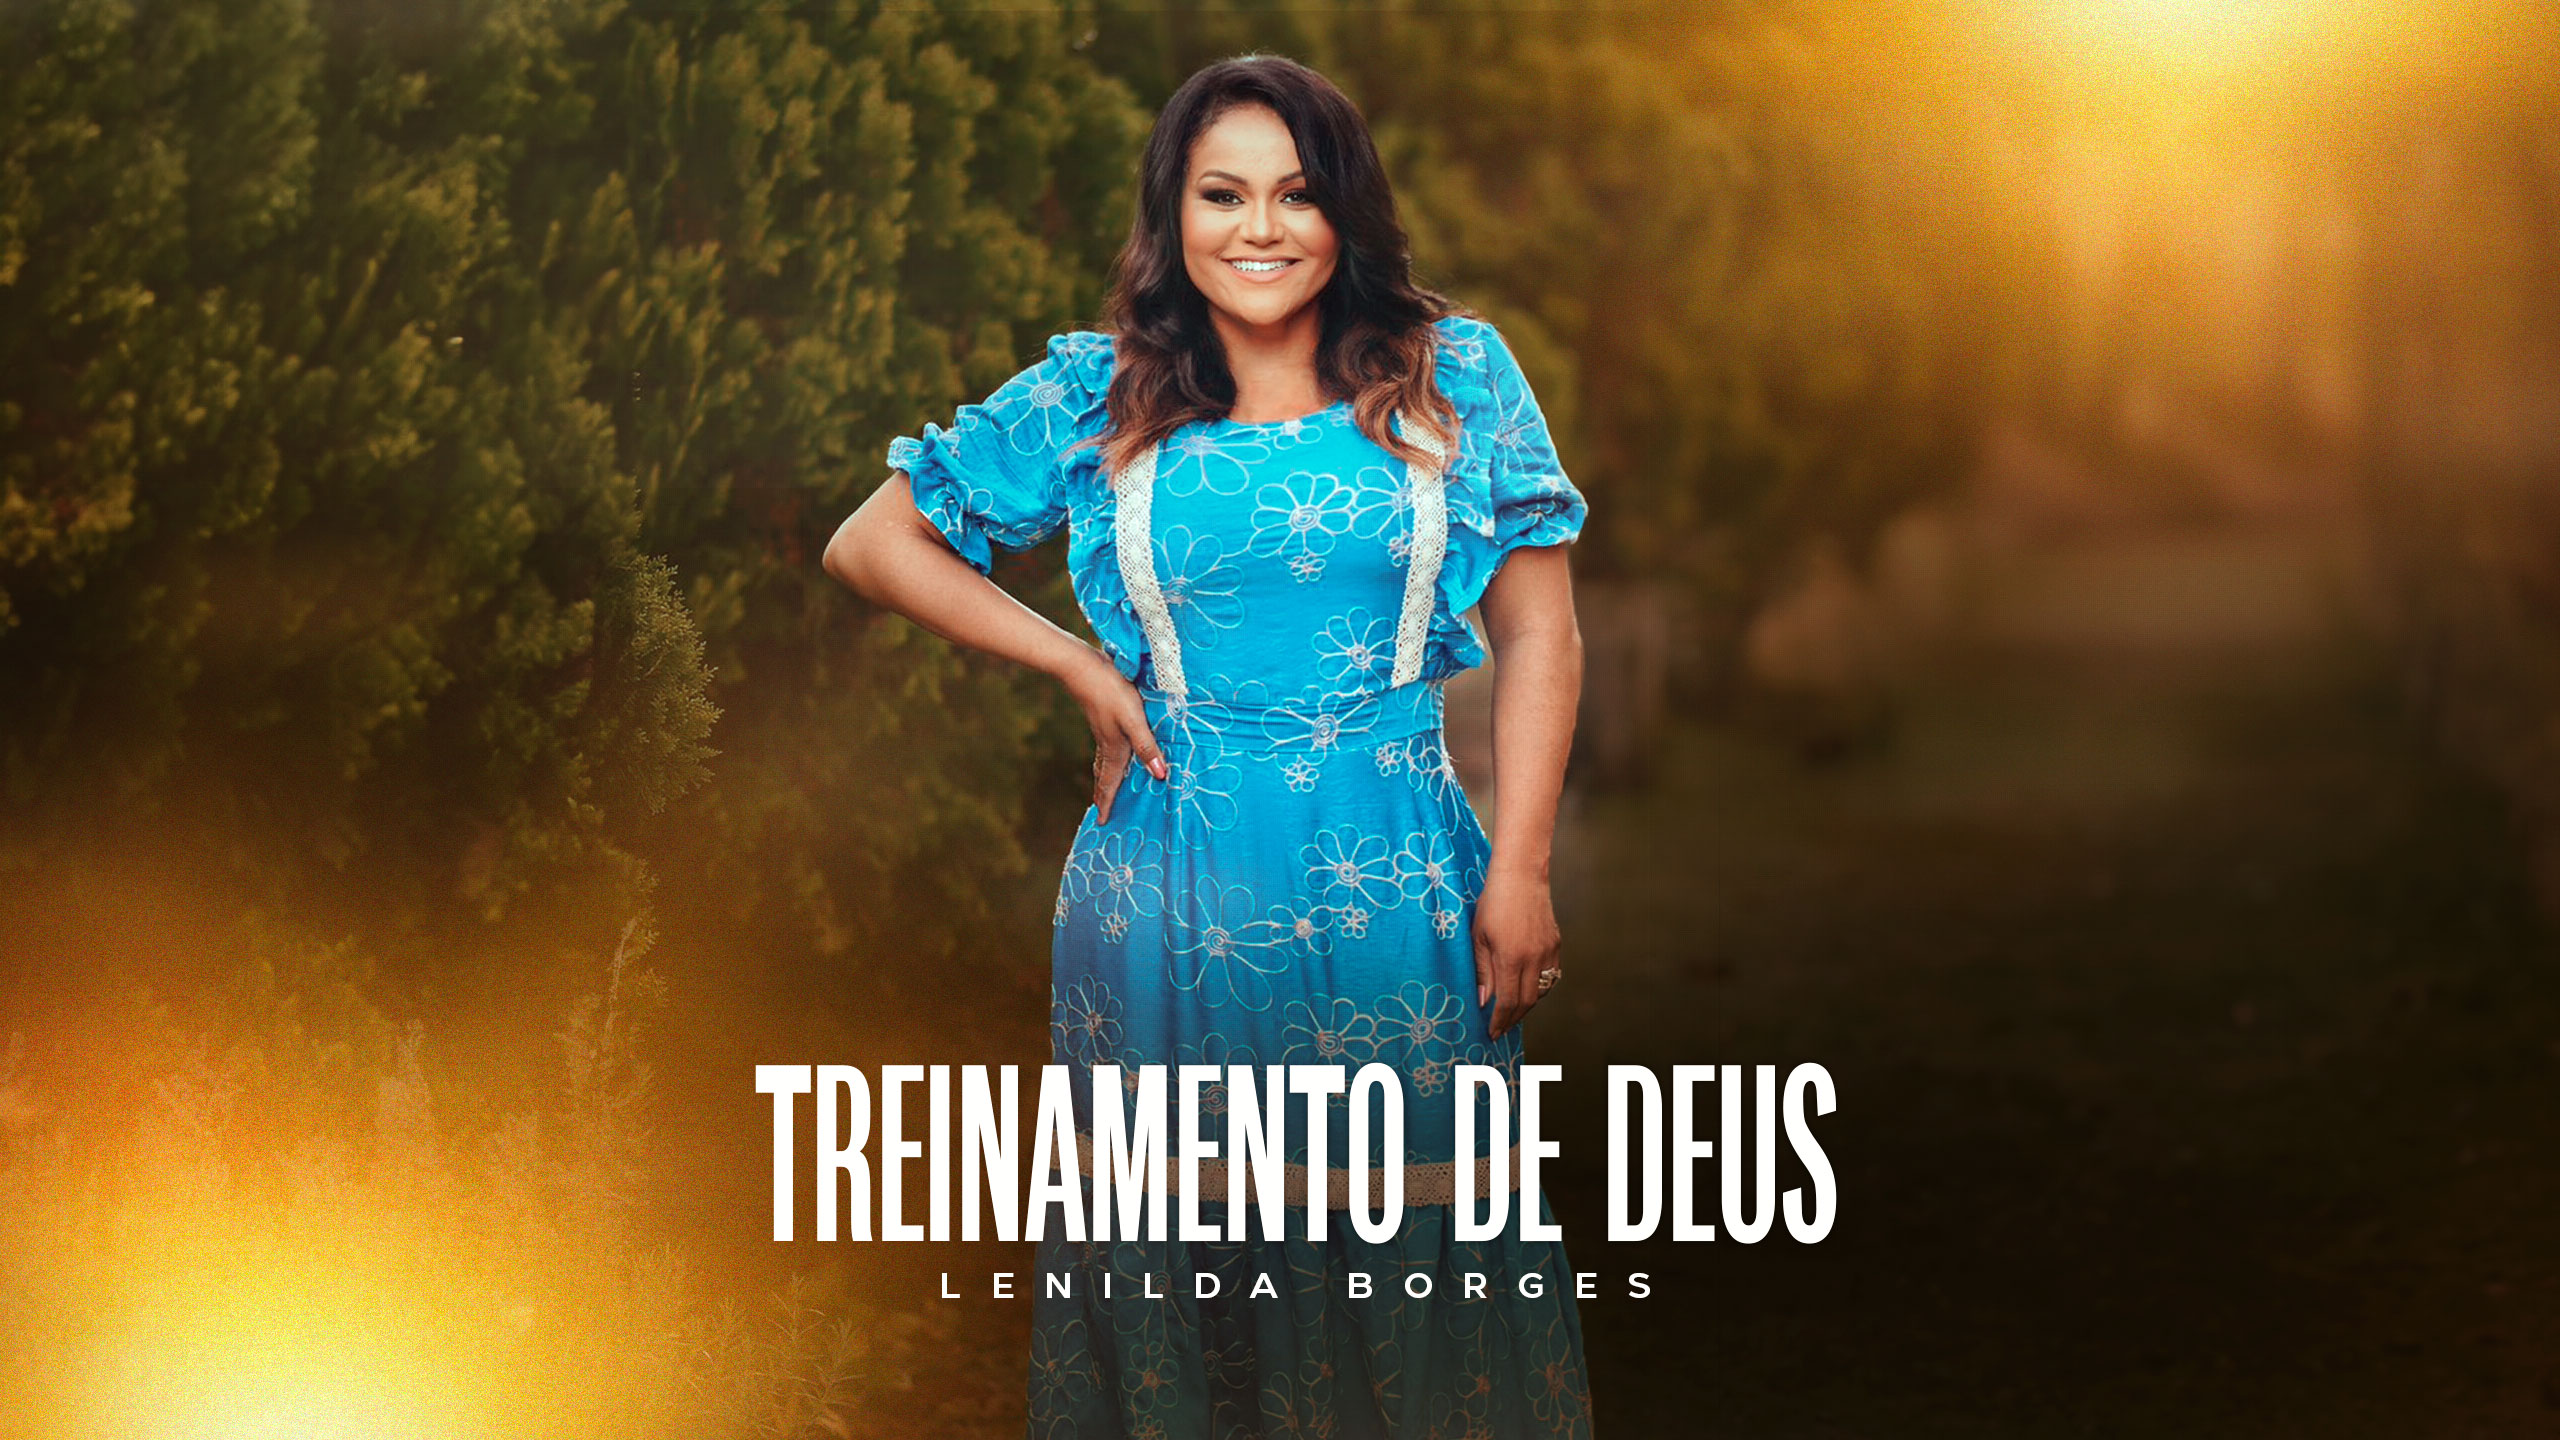 “Treinamento de Deus” - novo single de Lenilda Borges disponível nas plataformas de música